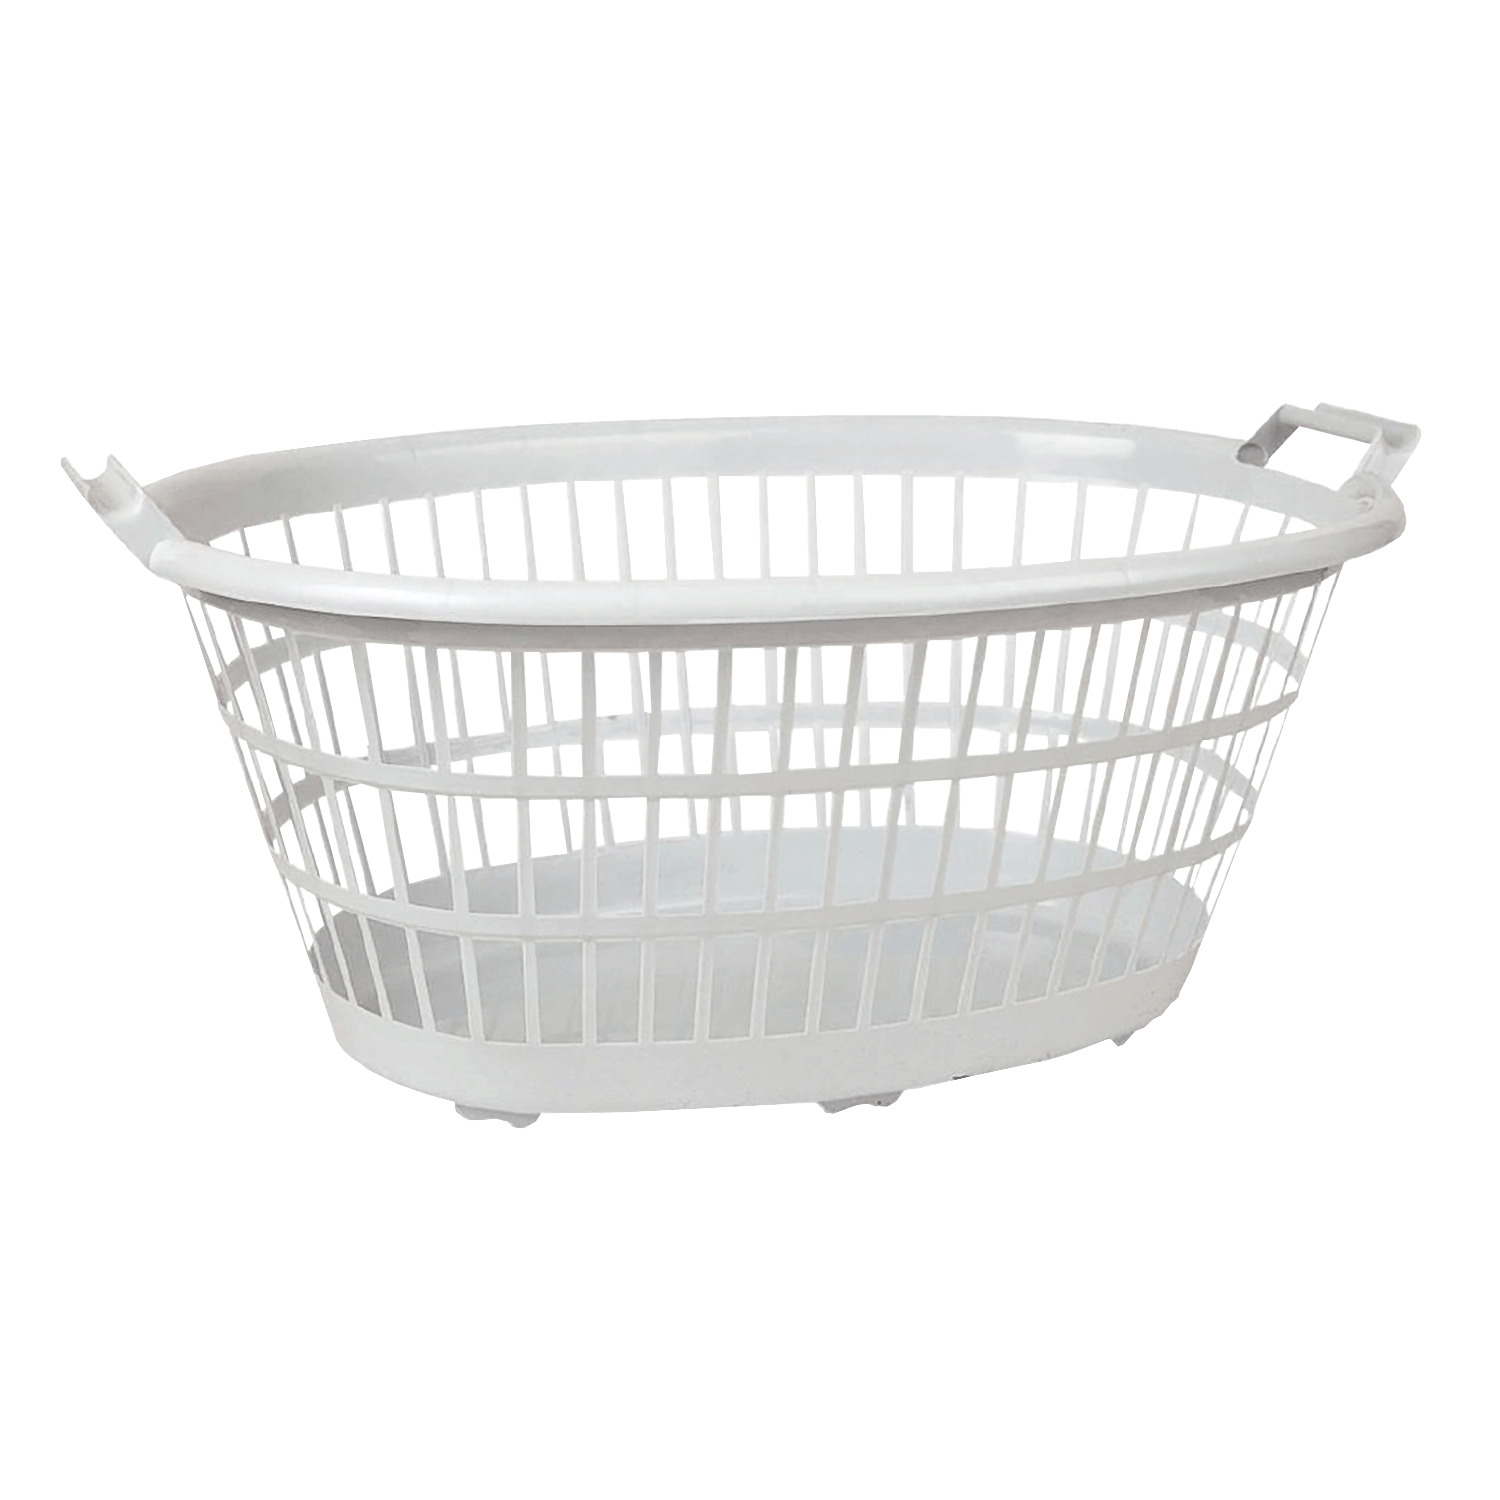 Oval laundry basket